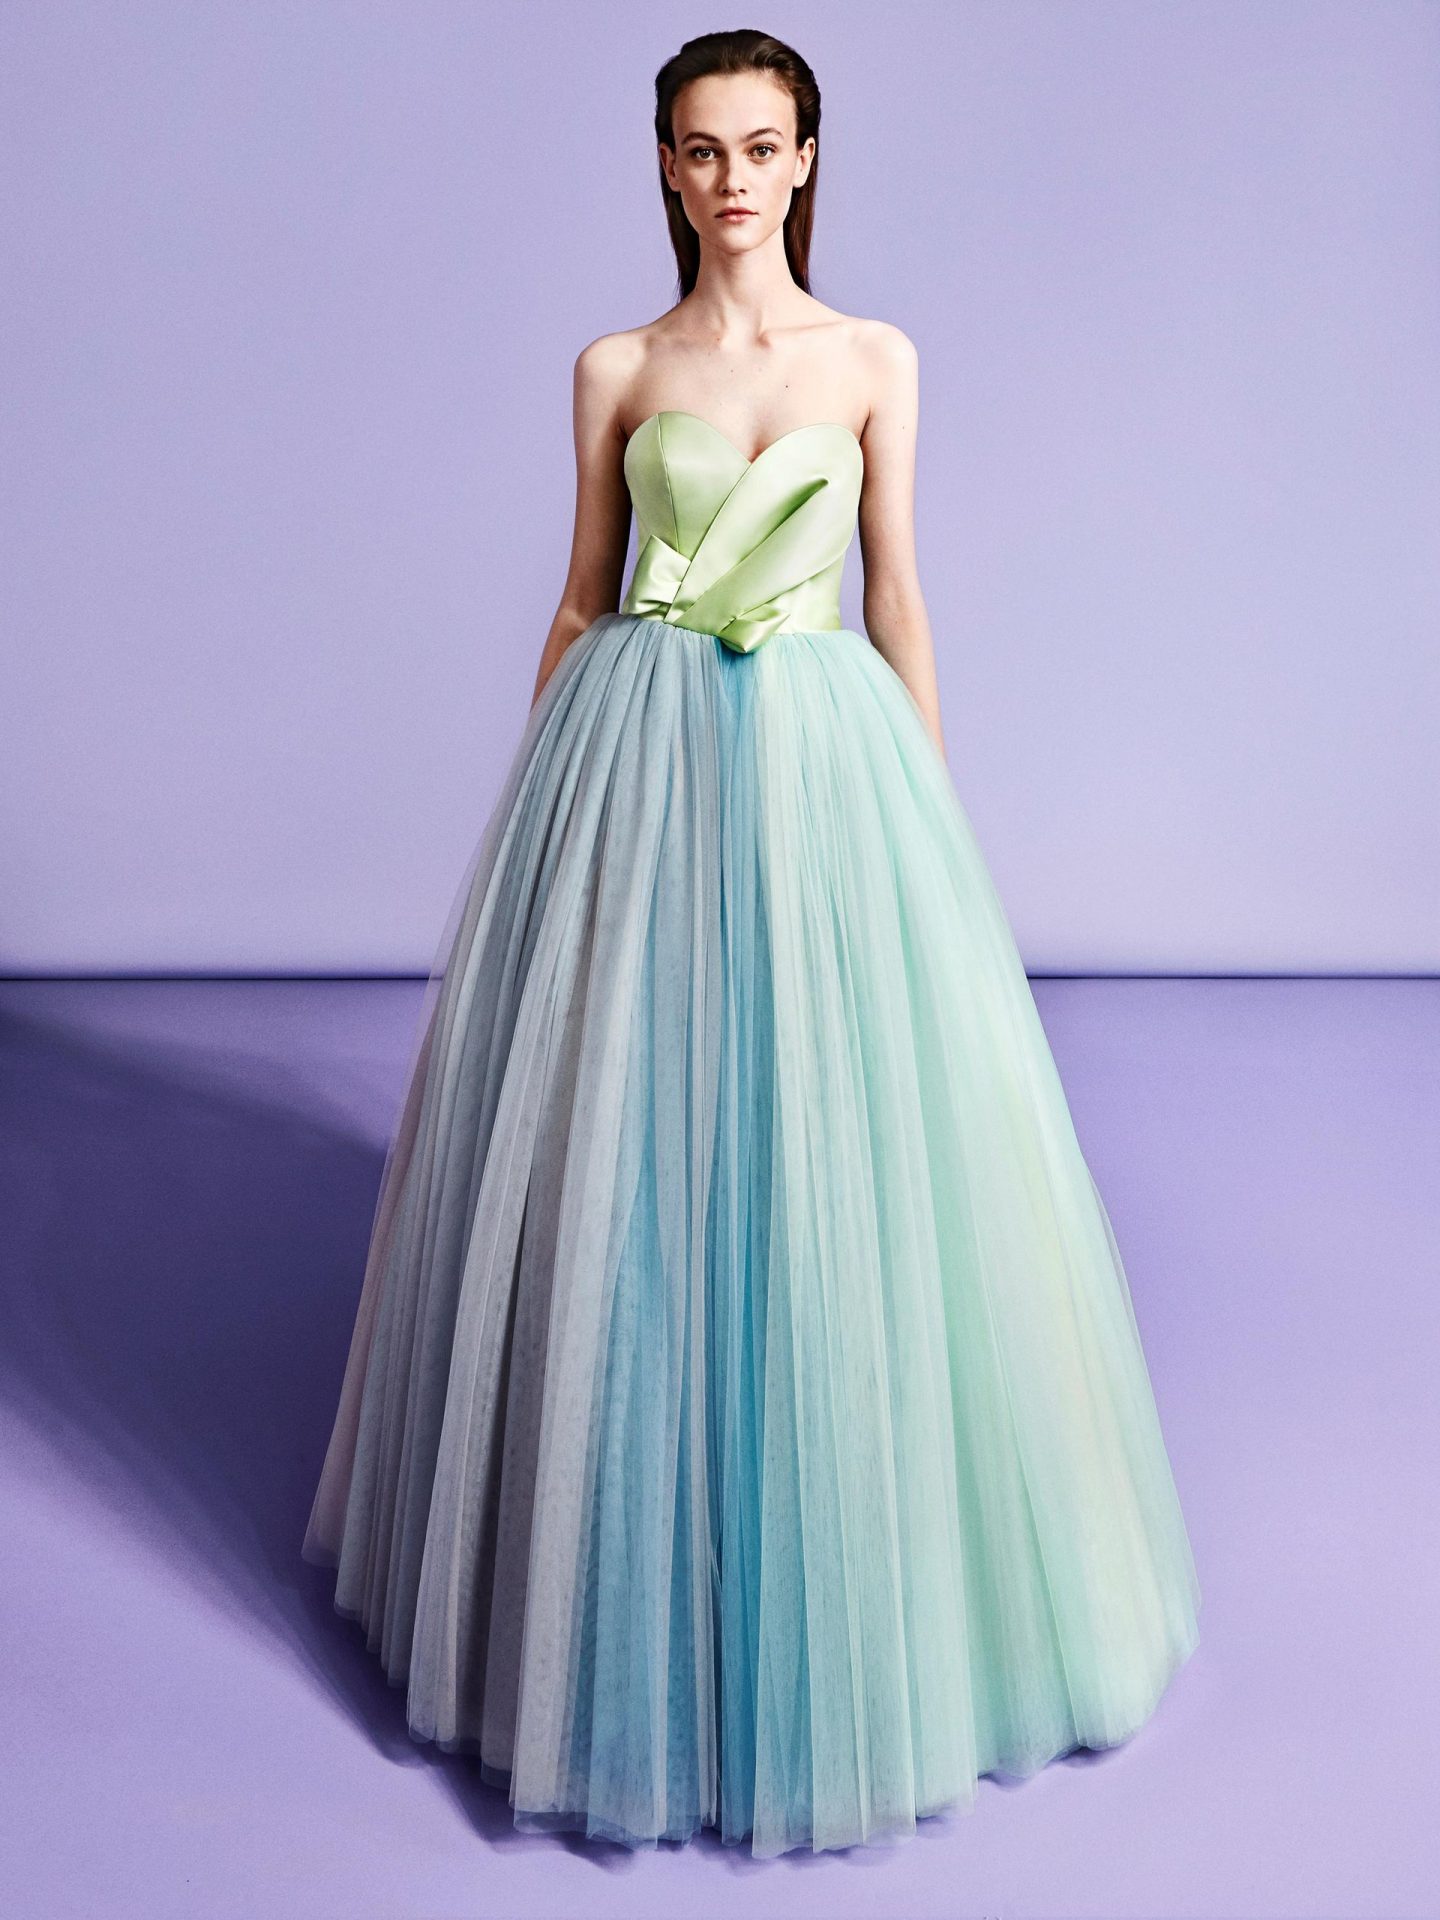 ライトグリーンを中心に絶妙なニュアンスカラーで配色されたスカートが目を惹くアイキャッチーカラードレス